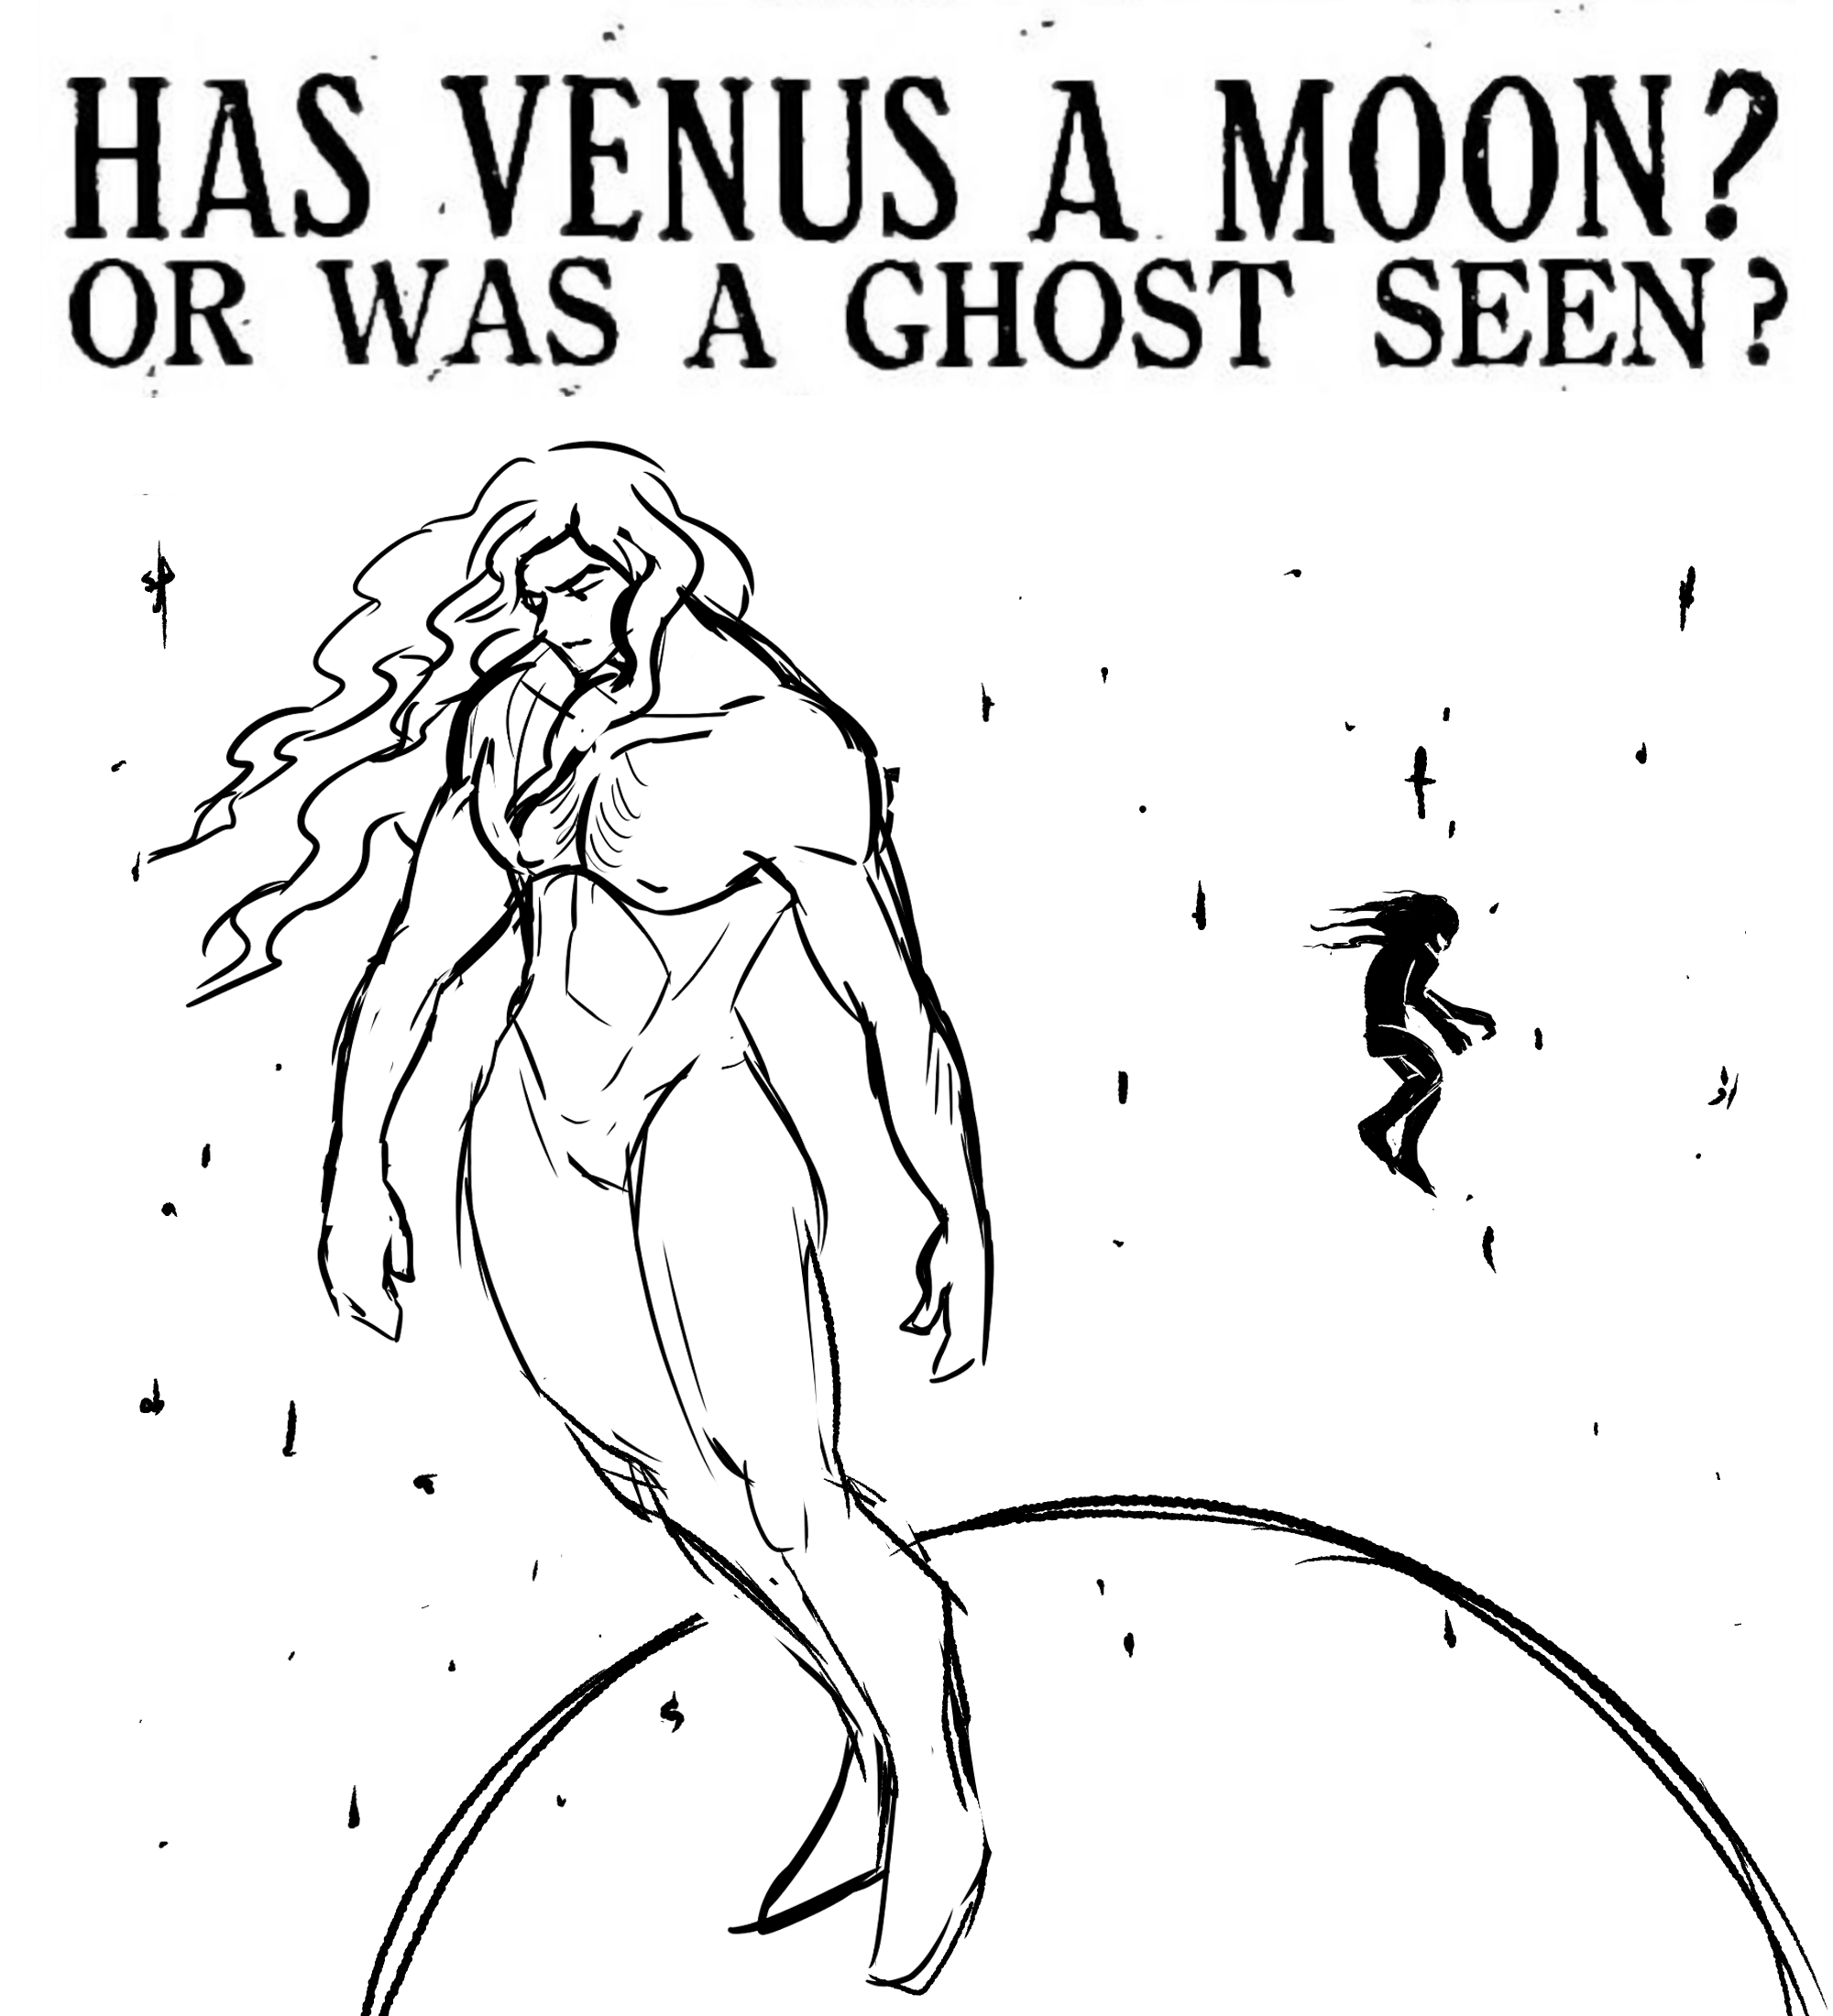 VENUS AND HIS MOON